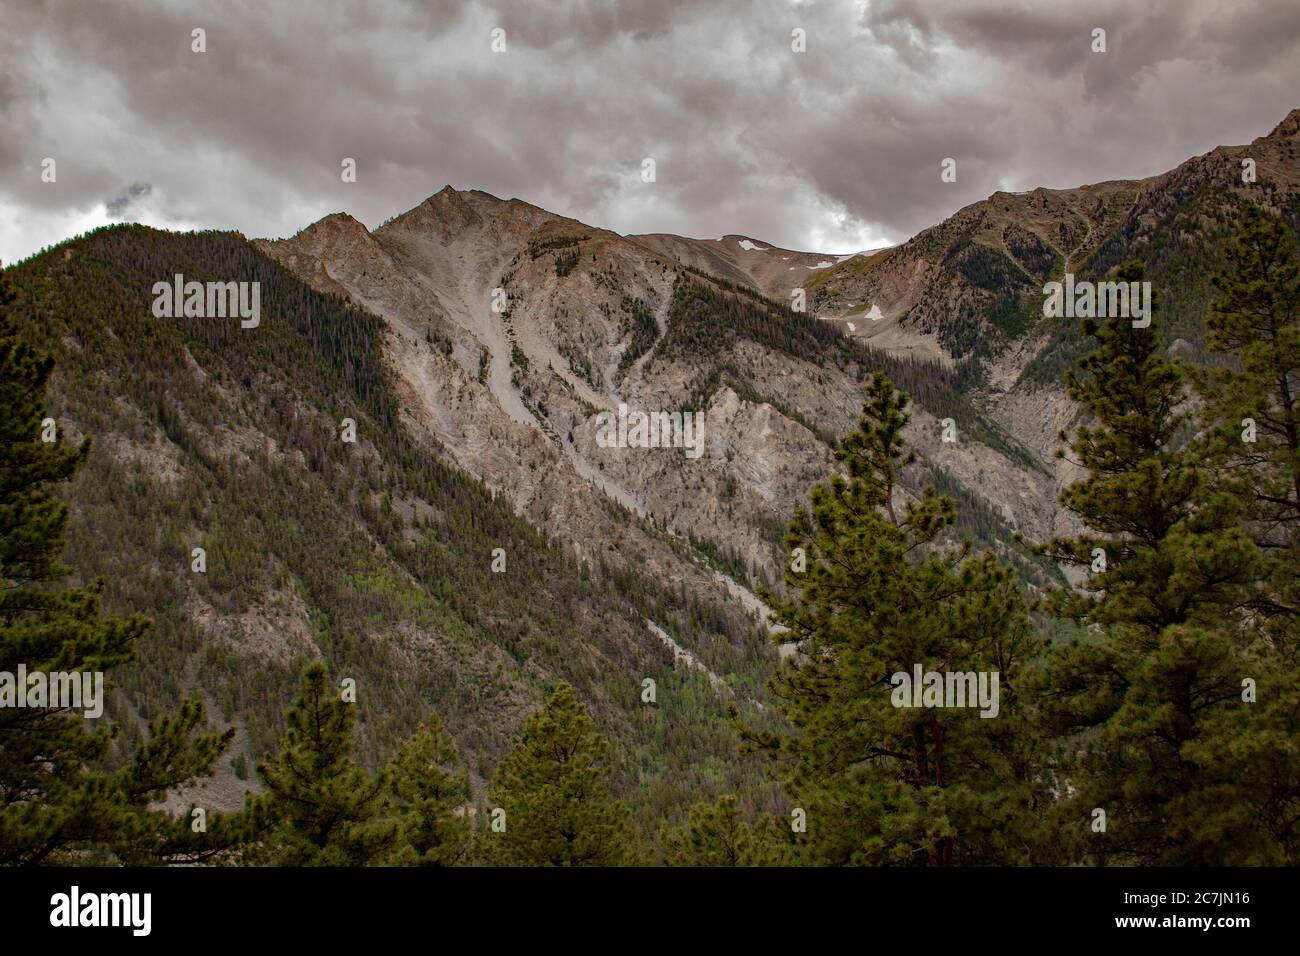 Mont Antero des montagnes Rocheuses dans la forêt nationale de San Isabel dans le comté de Chaffee, Colorado, États-Unis par une journée sombre et nuageux Banque D'Images